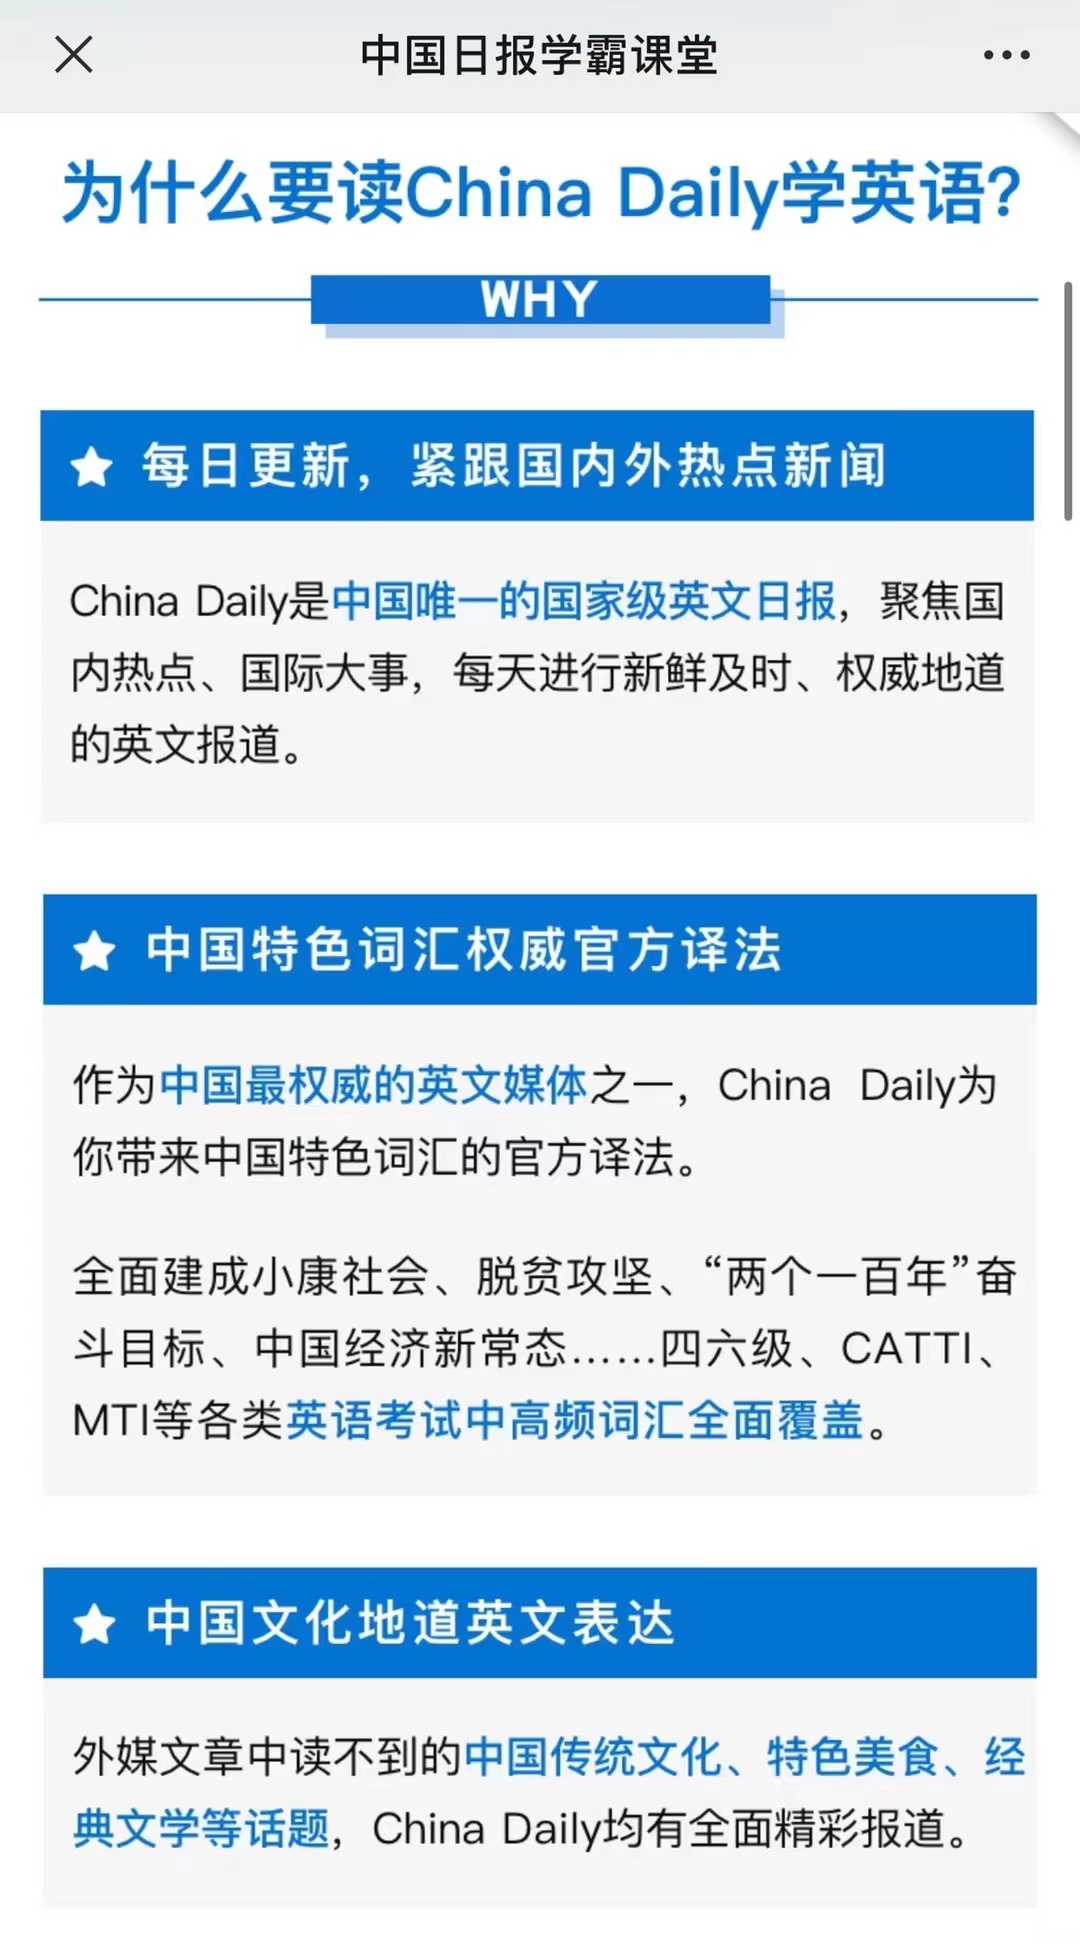 【英语更新】《China Daily 精读计划》 ●更新到5.31